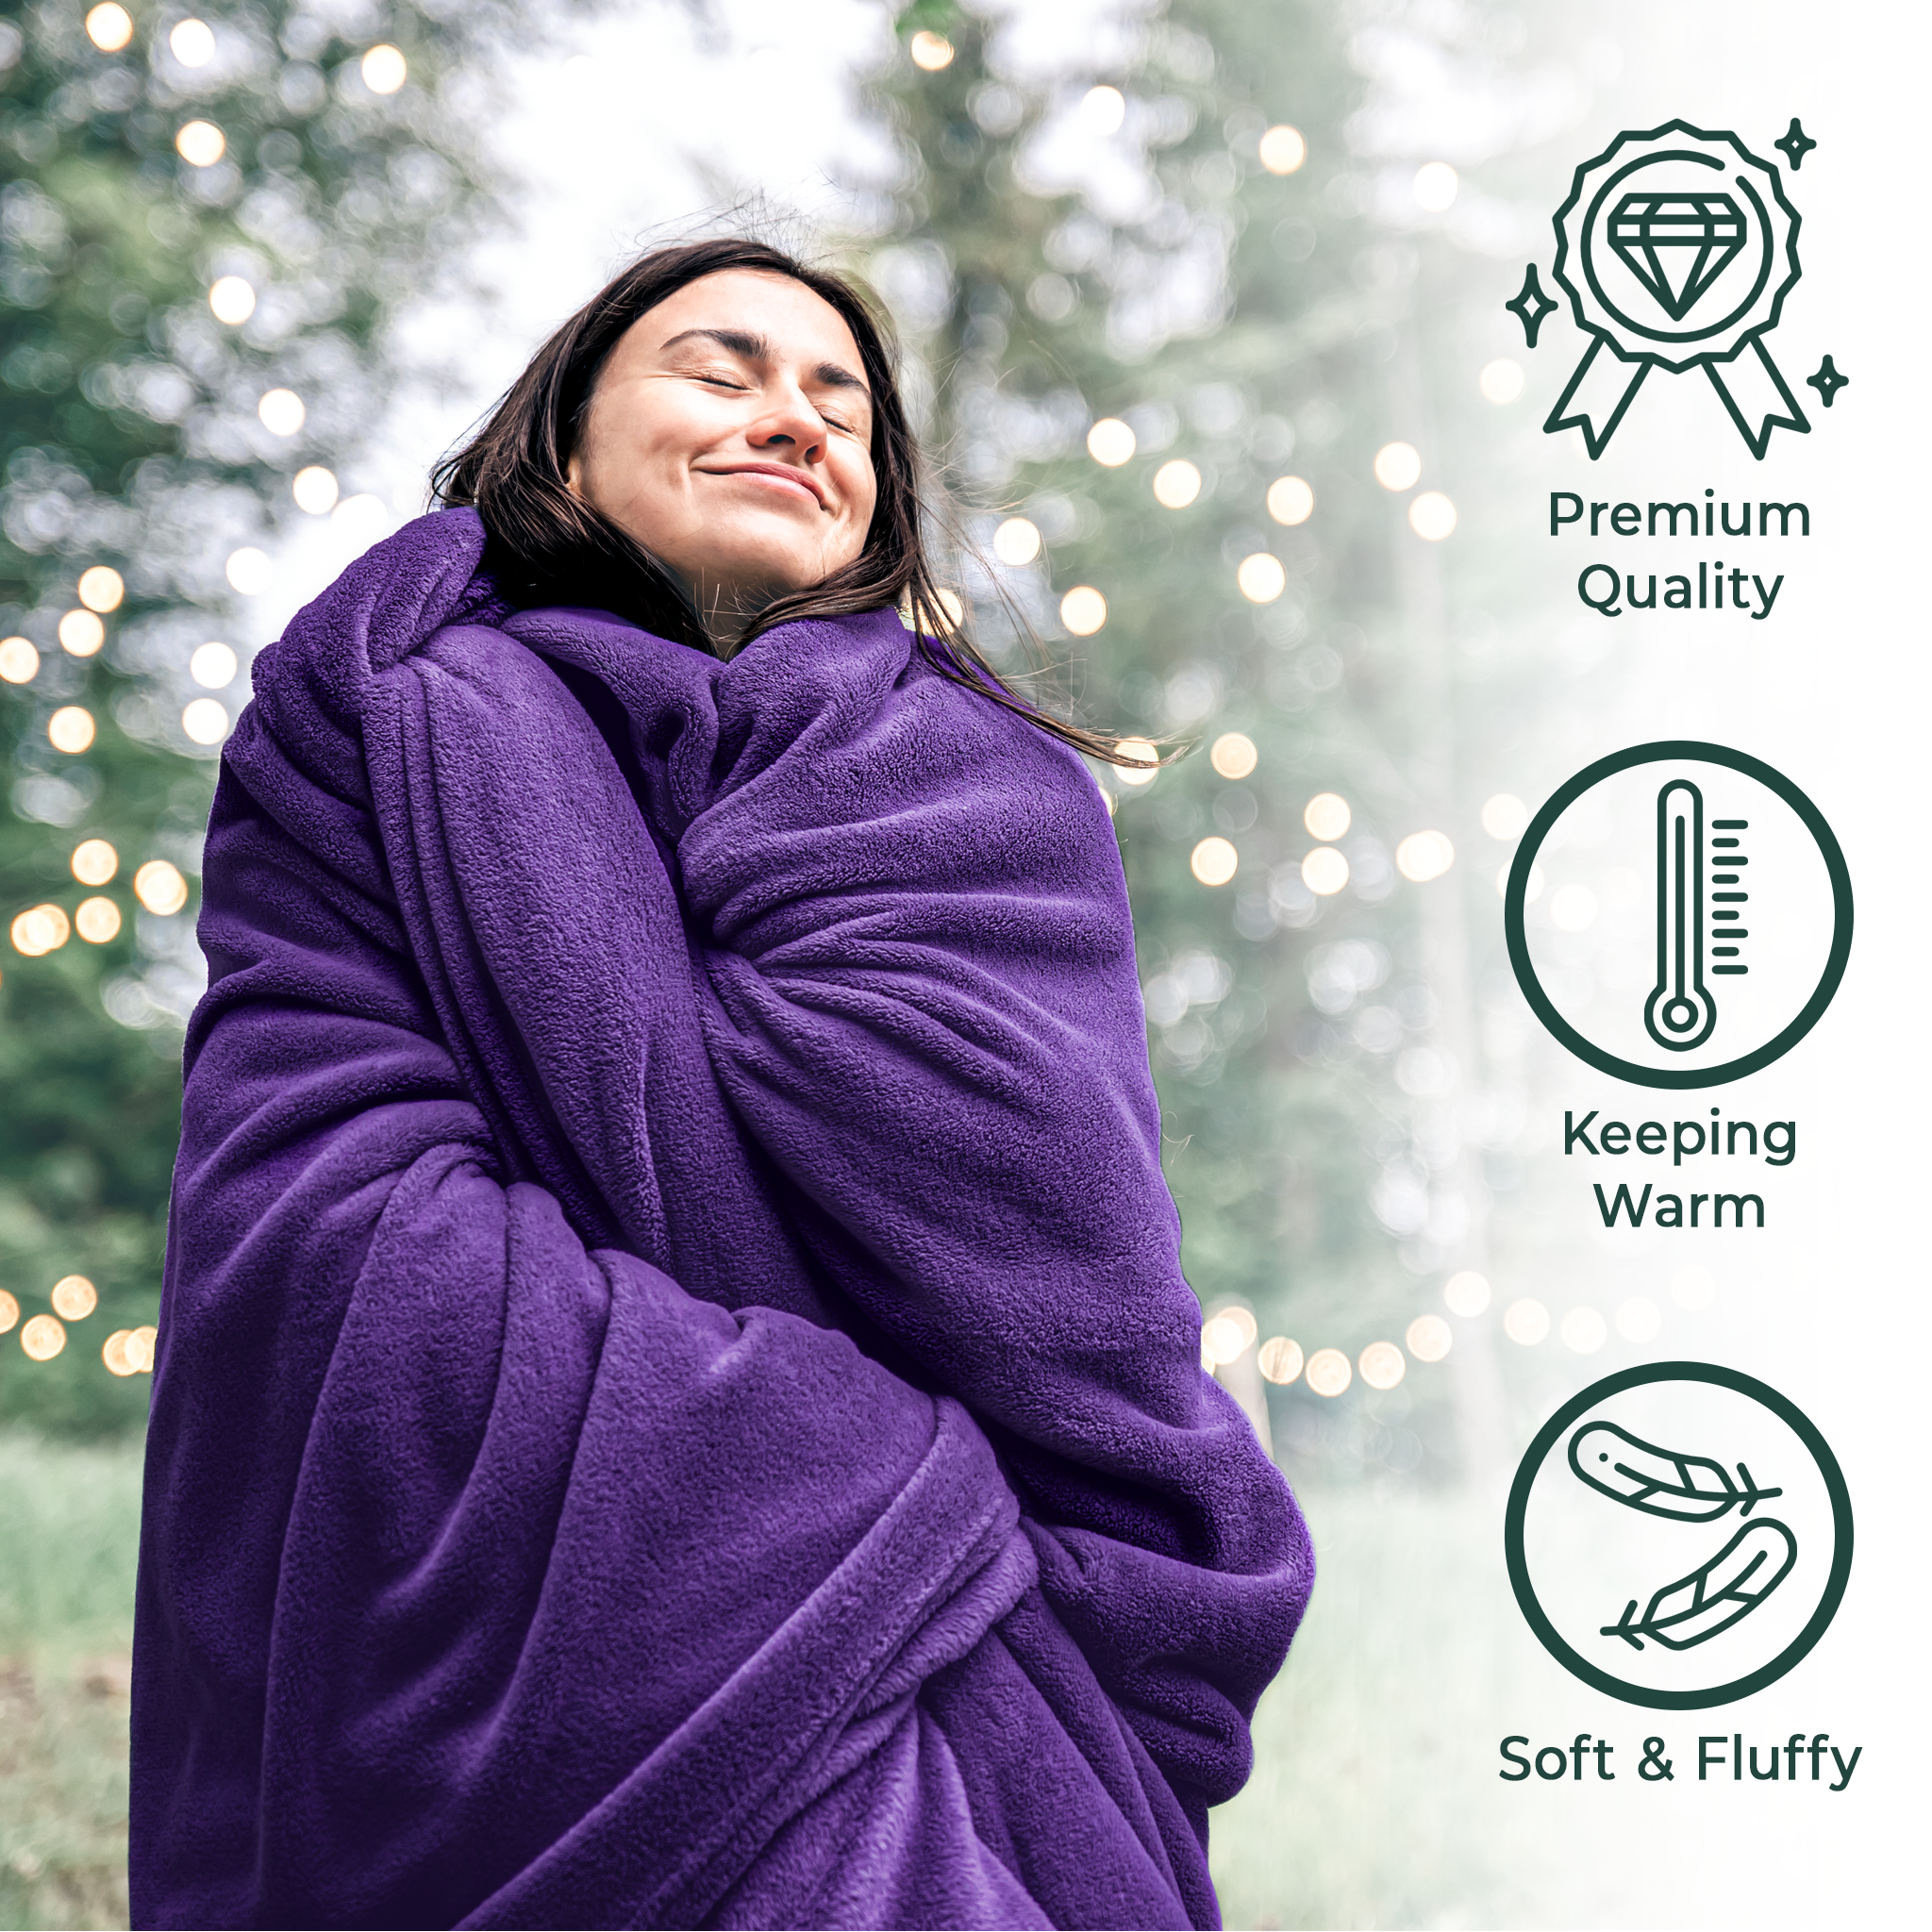 American Soft Linen - Bedding Fleece Blanket - Queen Size 85x90 inches - Purple - 2